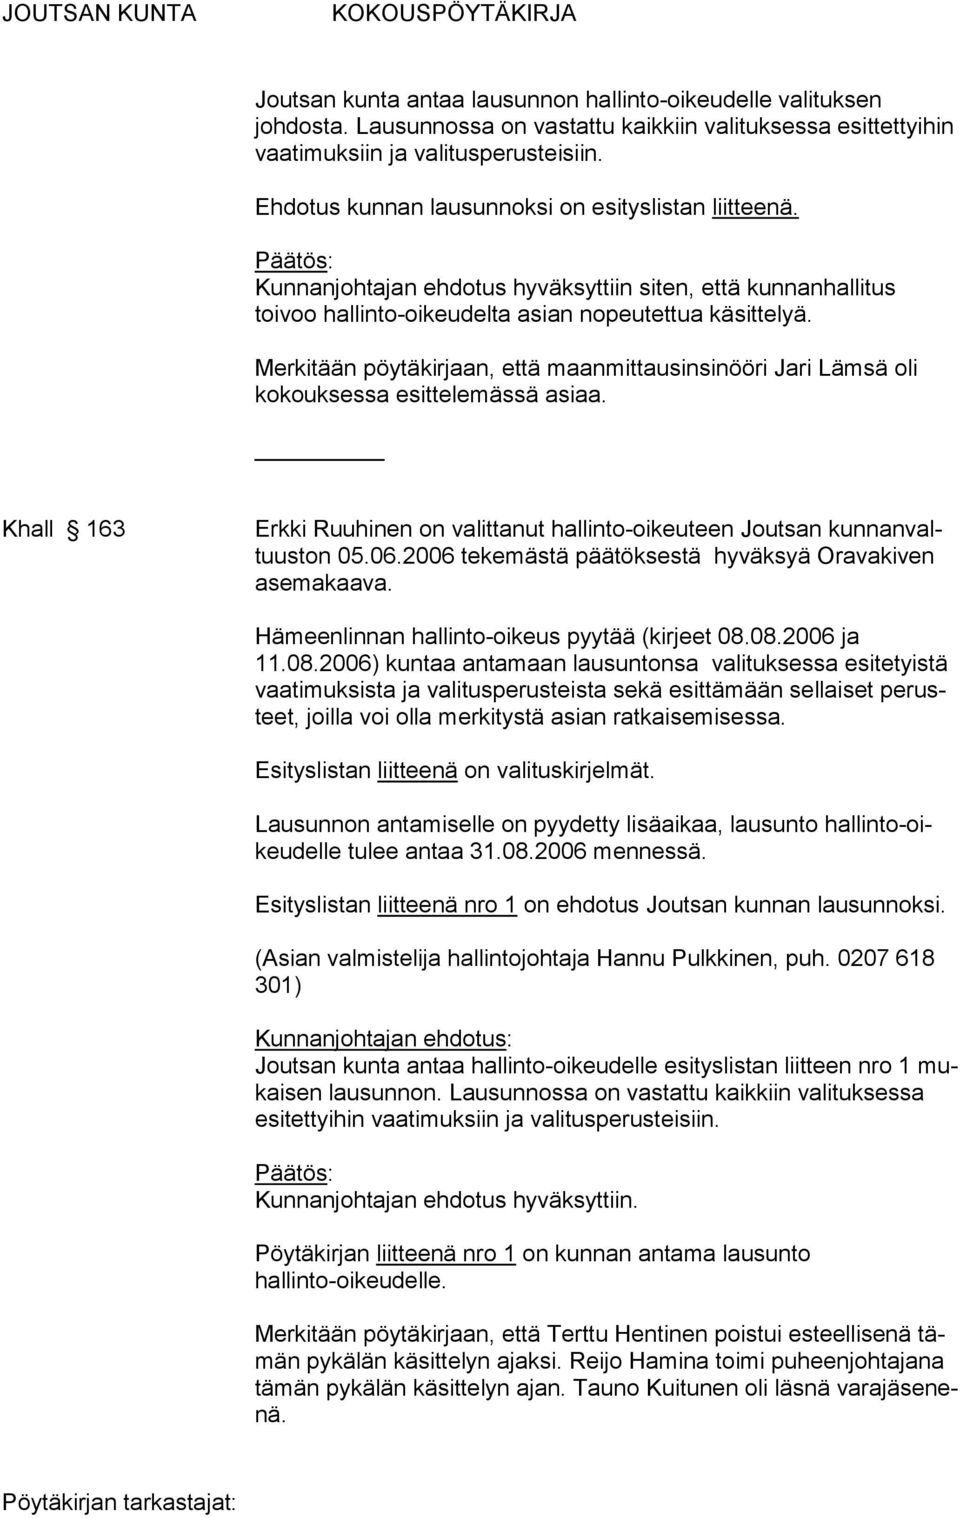 Merkitään pöytäkirjaan, että maanmittausinsinööri Jari Lämsä oli kokouksessa esittelemässä asiaa. Khall 163 Erkki Ruuhinen on valittanut hallinto-oikeuteen Joutsan kunnanvaltuuston 05.06.